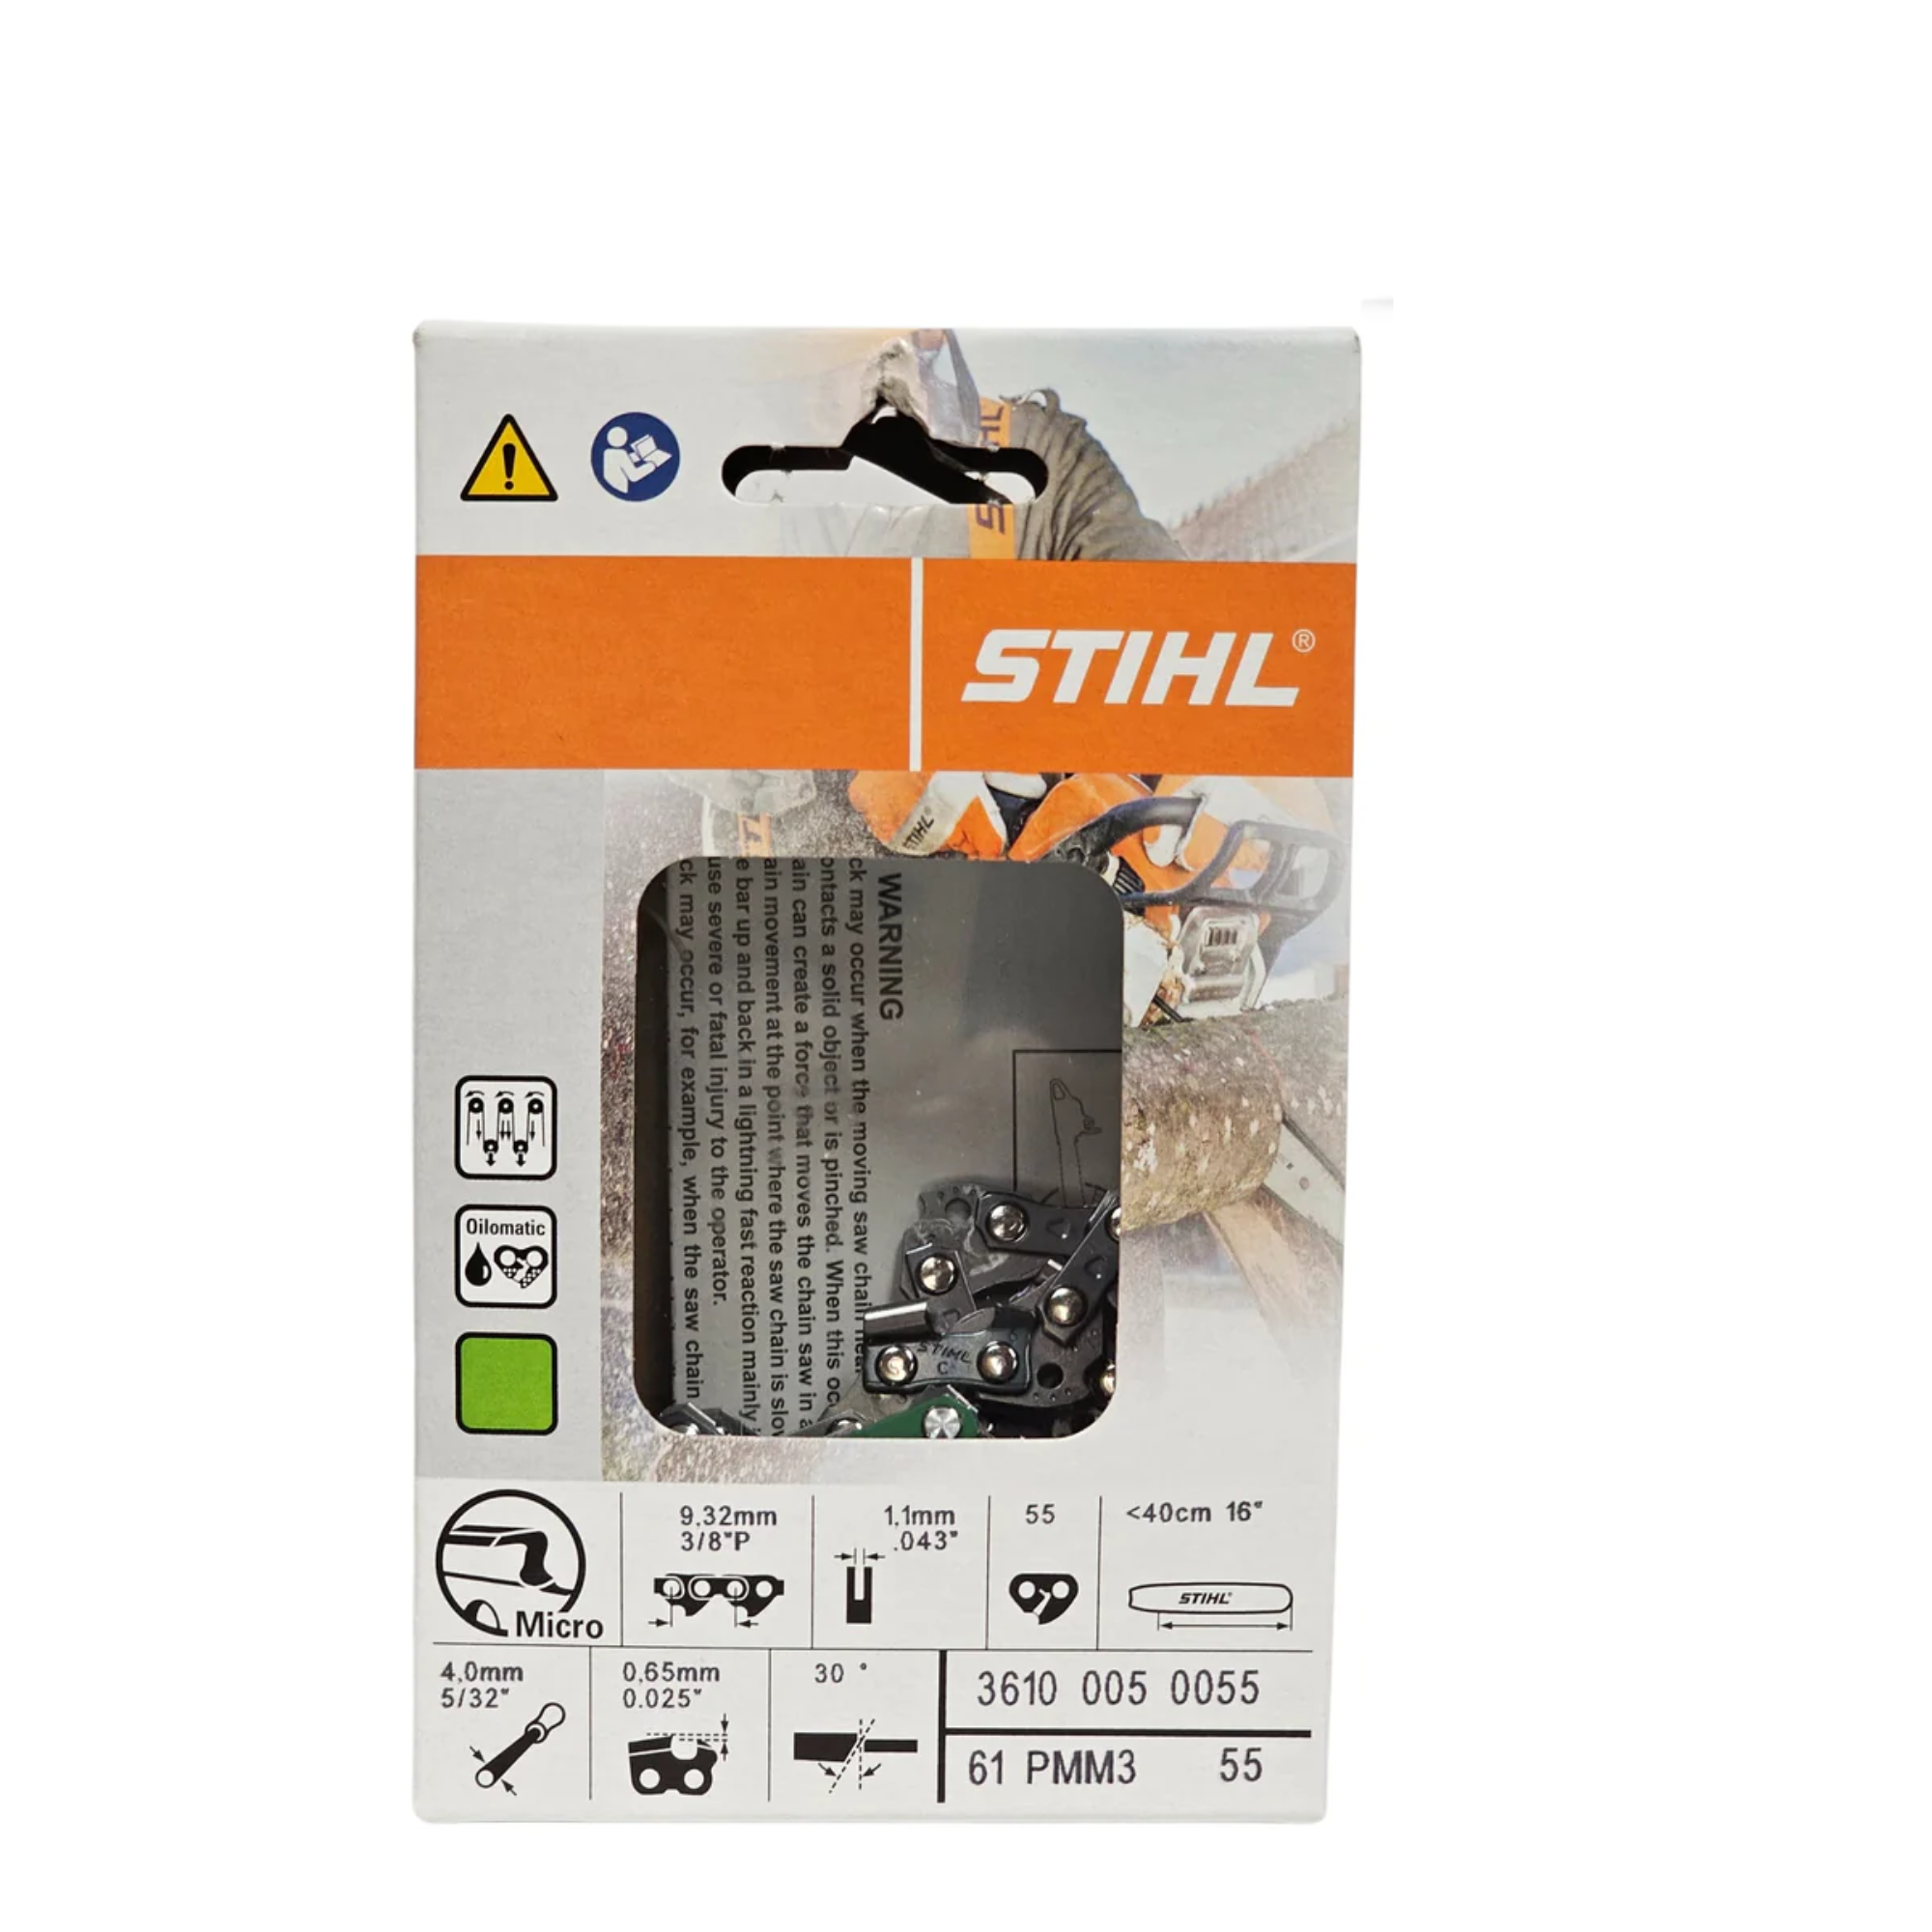 BULK || Stihl Oilomatic Picco Micro Mini 3 | 61 PMM3 55 | 16 in. | 55 Drive Links | Chainsaw Chain | 3610 005 0055